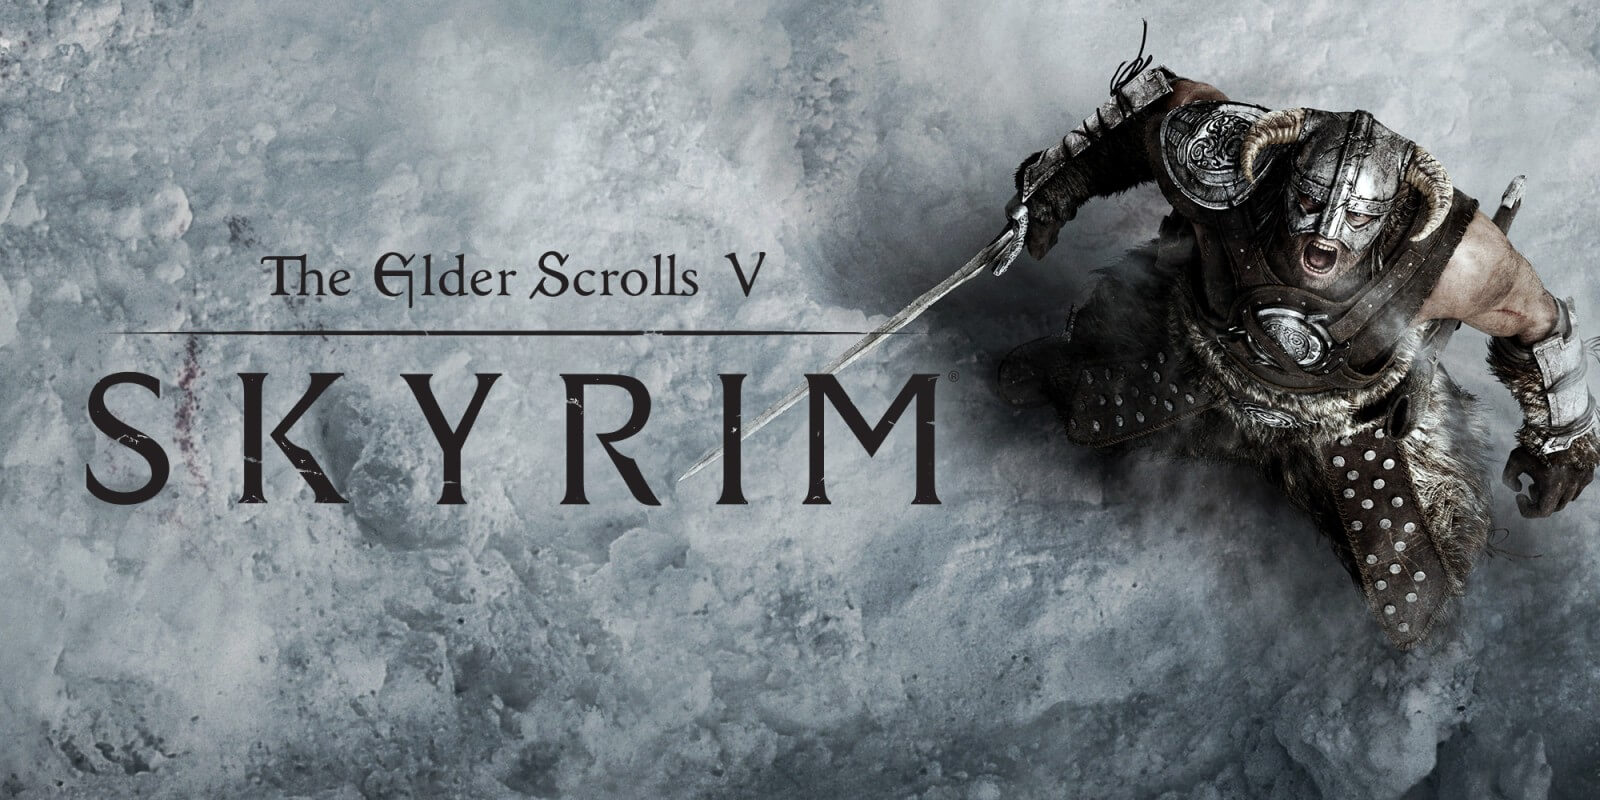 Mod untuk The Elder Scrolls V: Skyrim ini memungkinkan Anda menghancurkan objek, seperti tong dan kursi